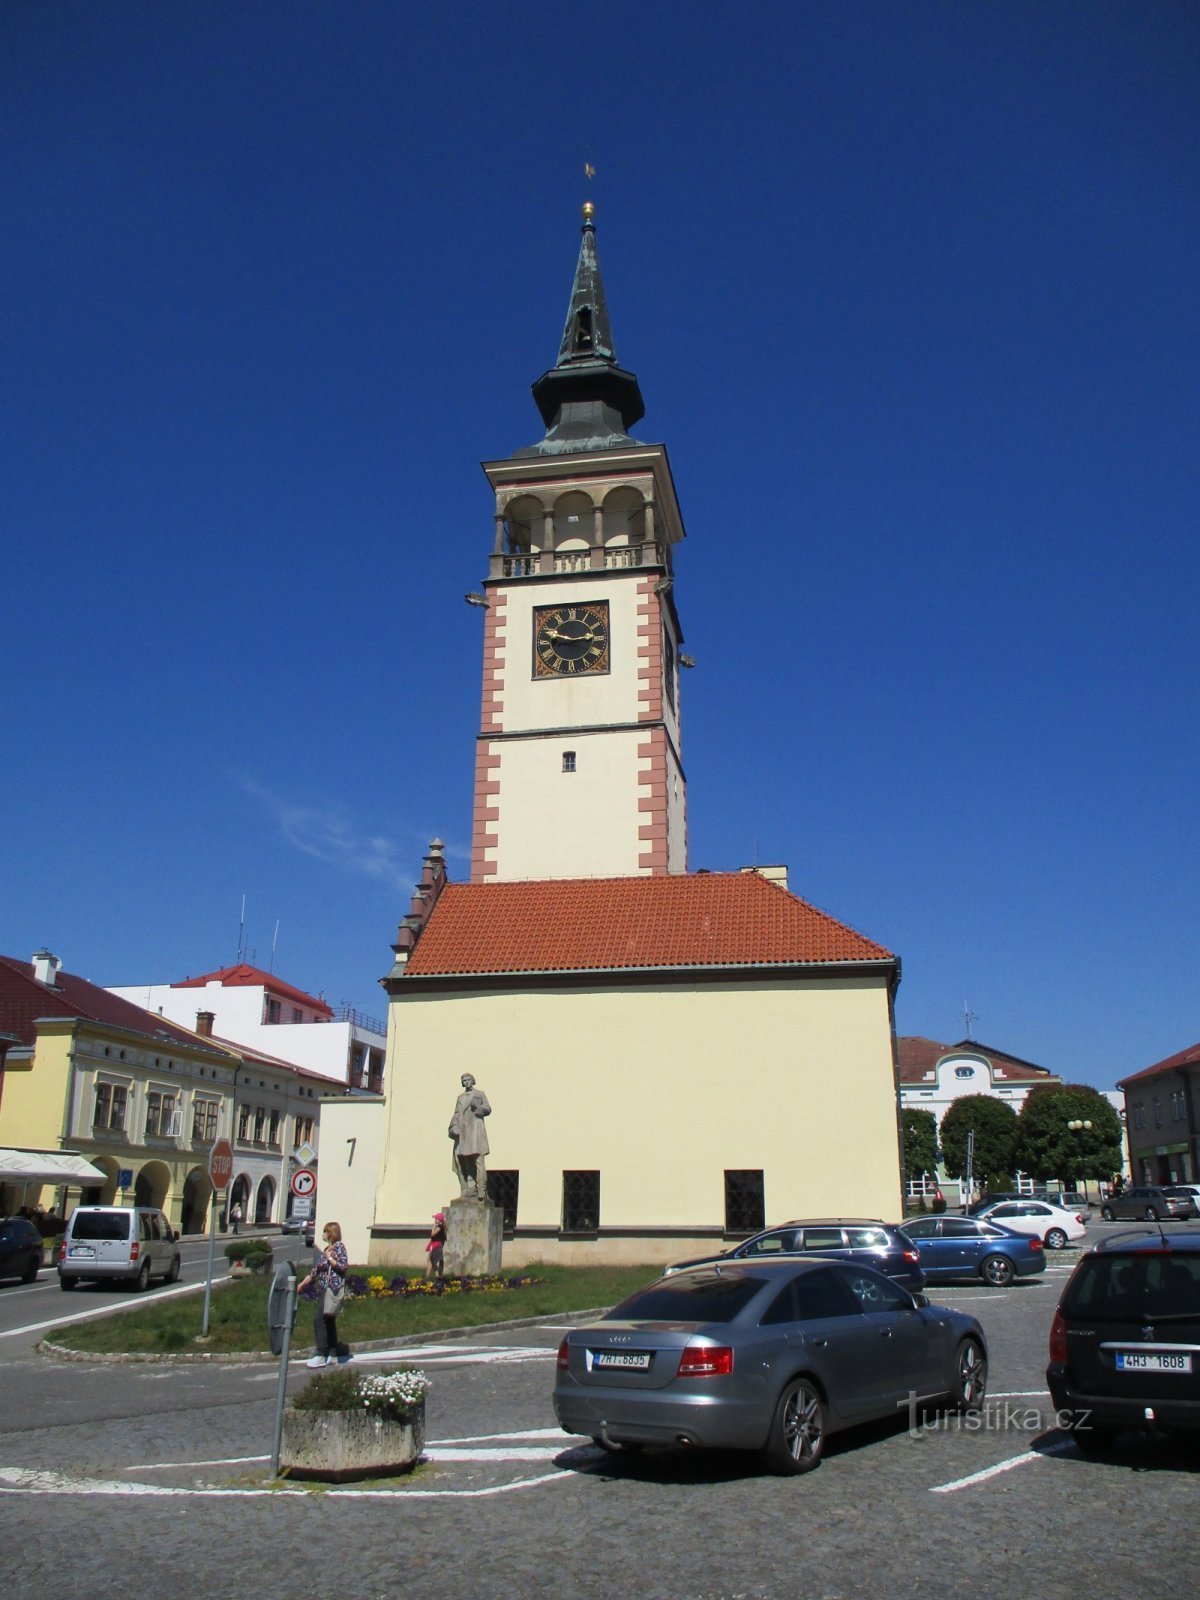 Tháp Tòa thị chính (Dobruška, 18.5.2020/XNUMX/XNUMX)